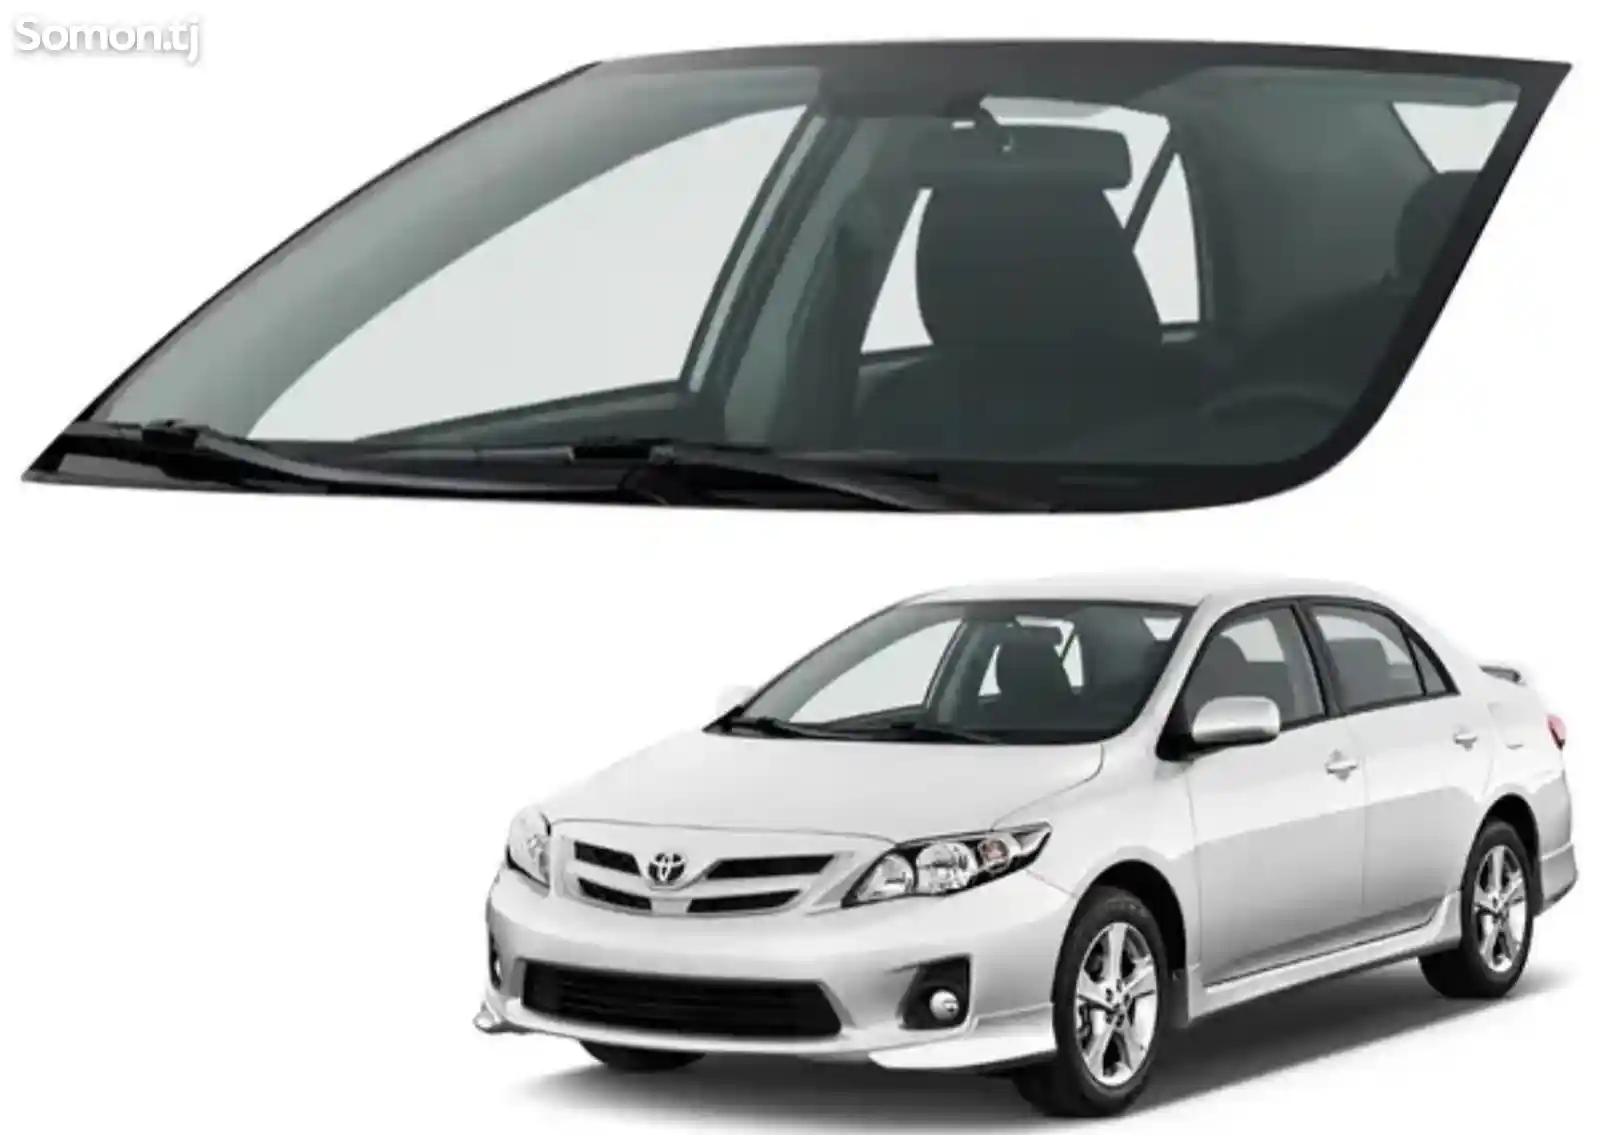 Лобовое стекло Toyota Corolla 3